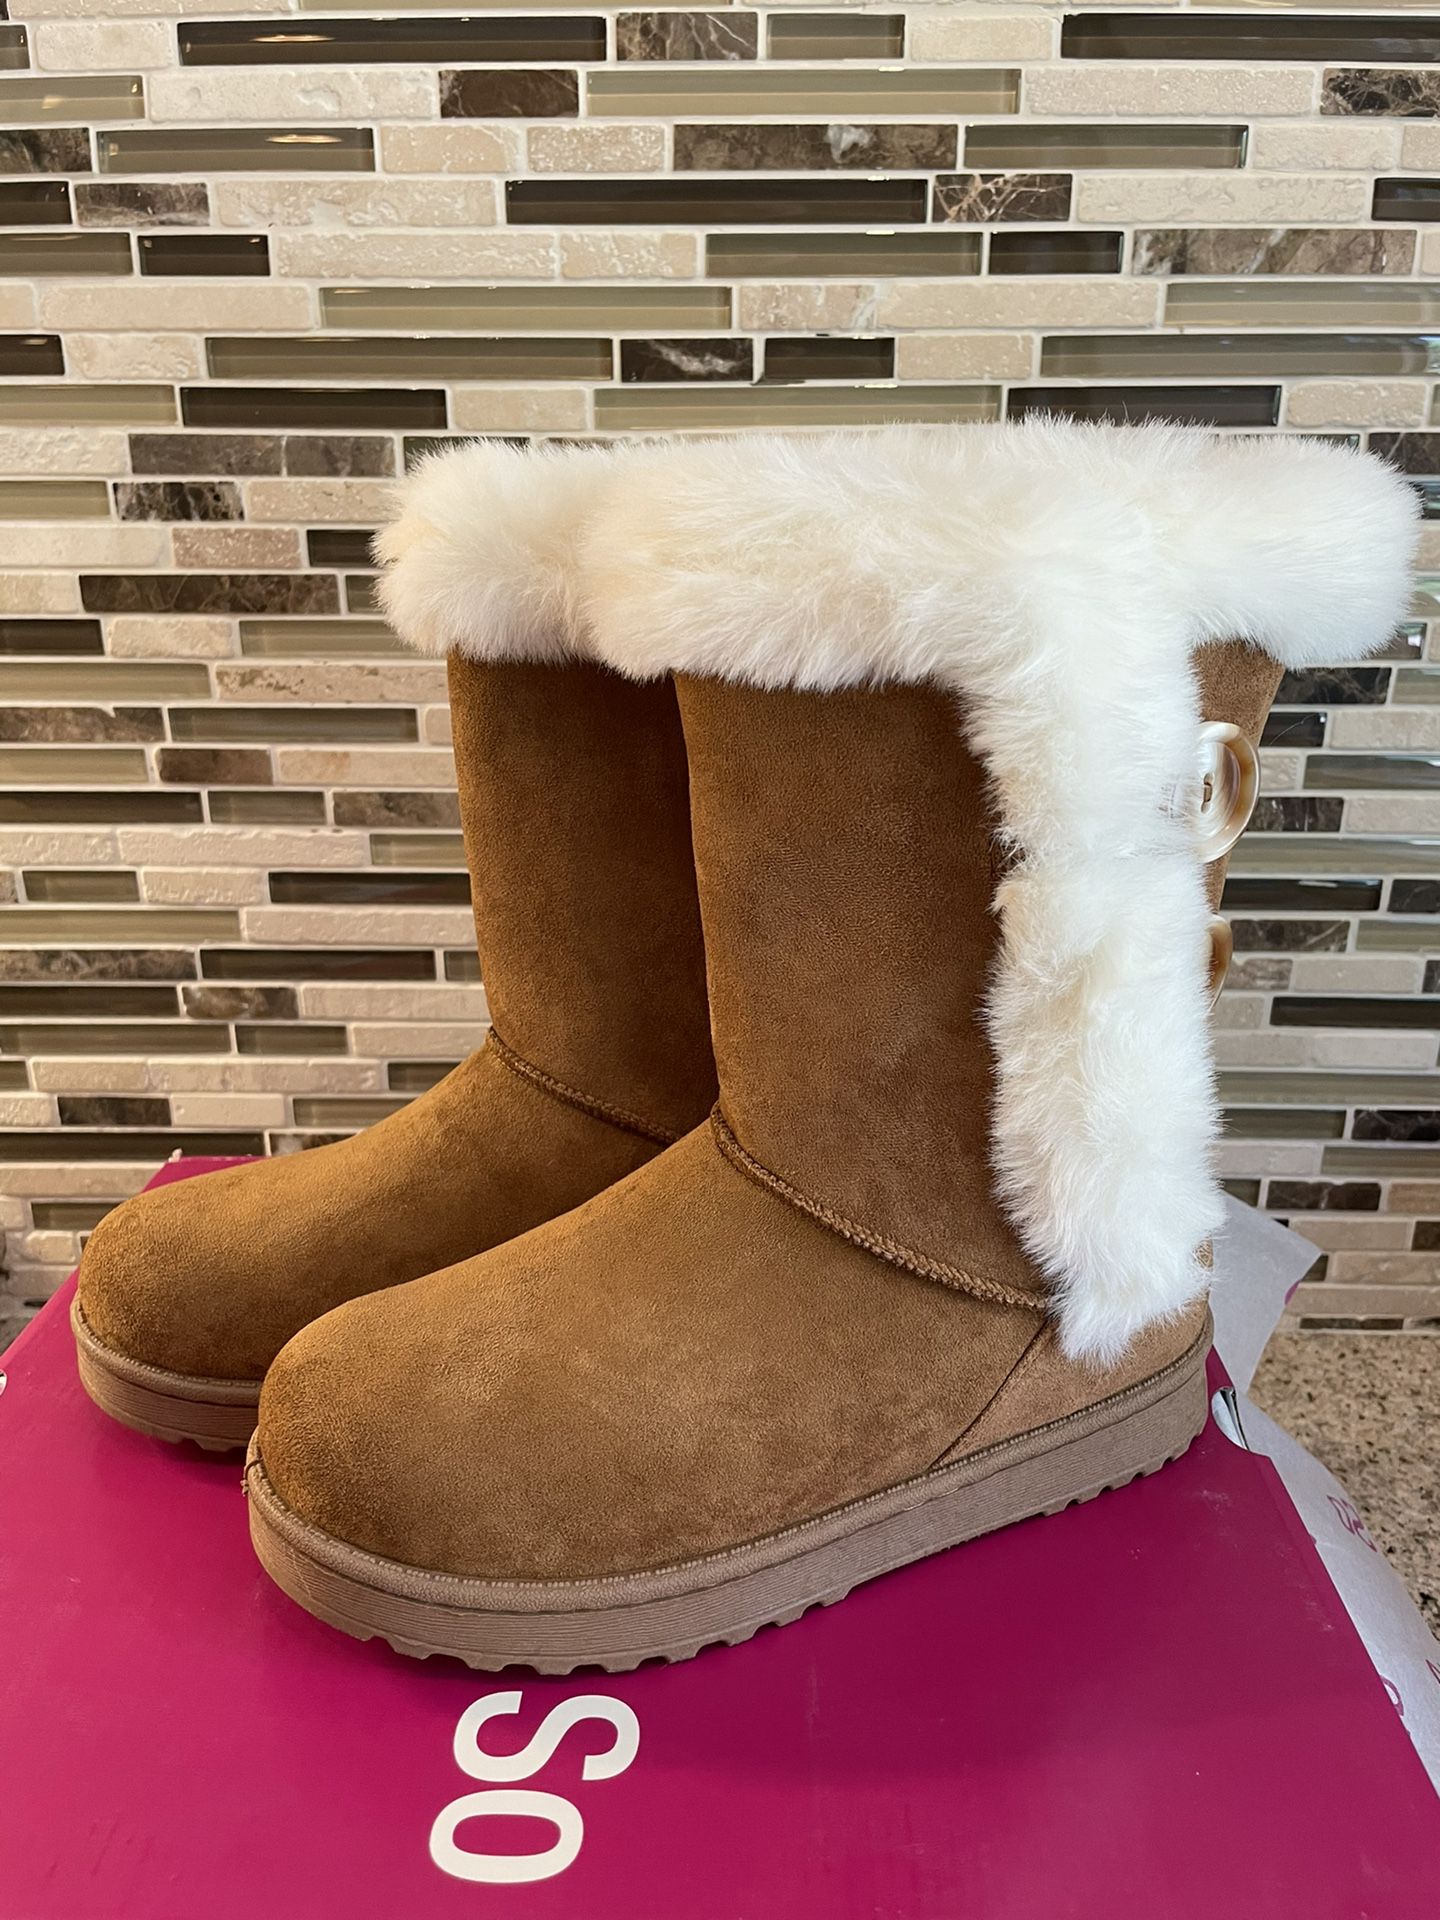 Brand New Women’s Sz 6 Cozy Warm Boots 